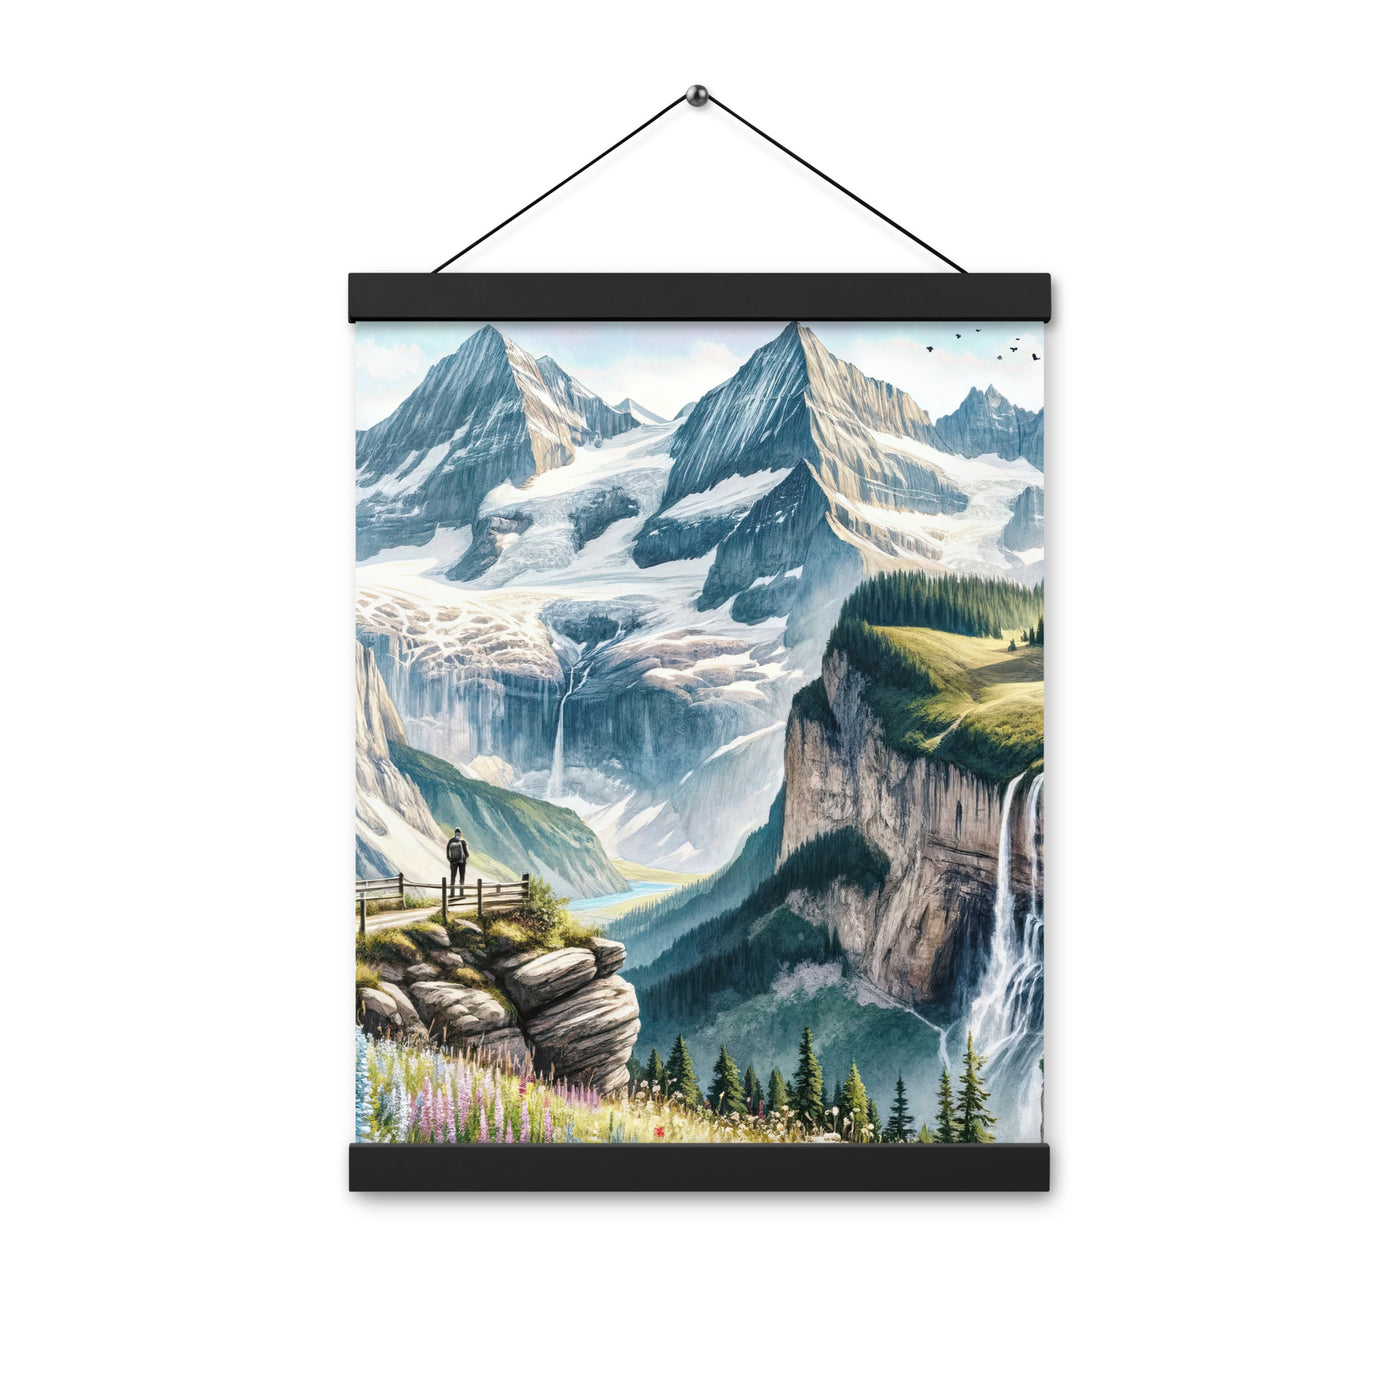 Aquarell-Panoramablick der Alpen mit schneebedeckten Gipfeln, Wasserfällen und Wanderern - Premium Poster mit Aufhängung wandern xxx yyy zzz 30.5 x 40.6 cm